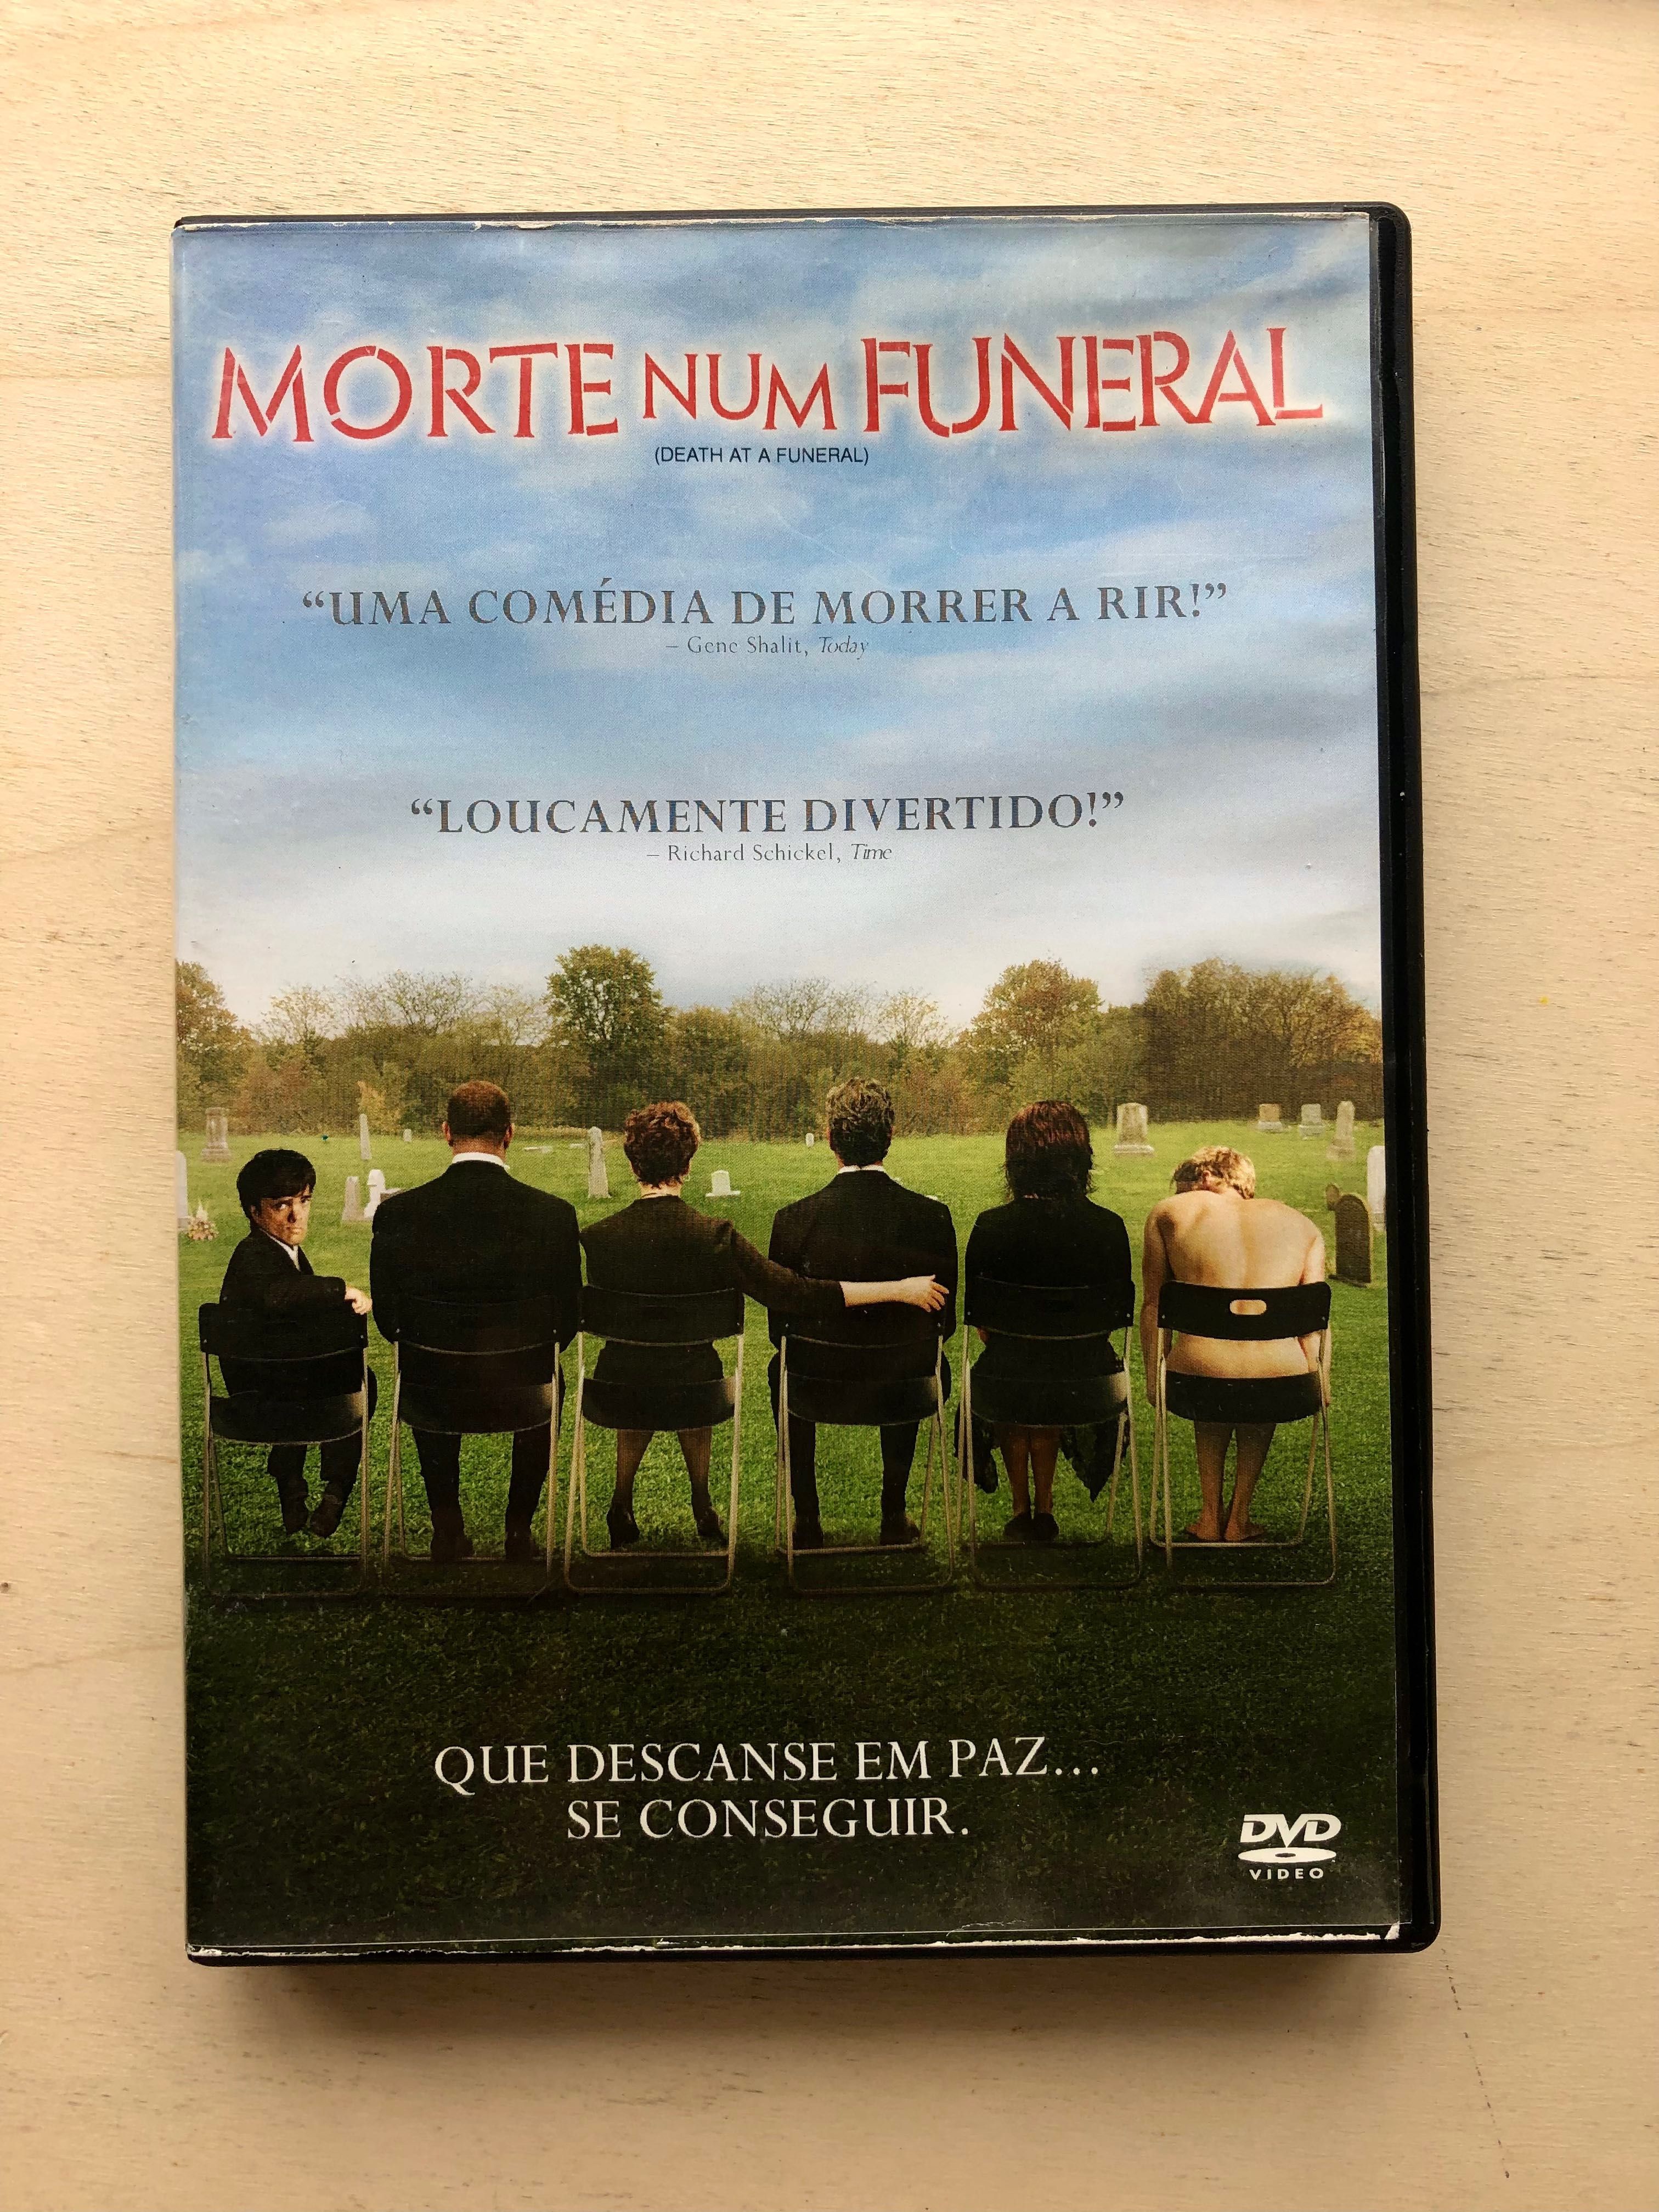 DVD “Morte num Funeral”